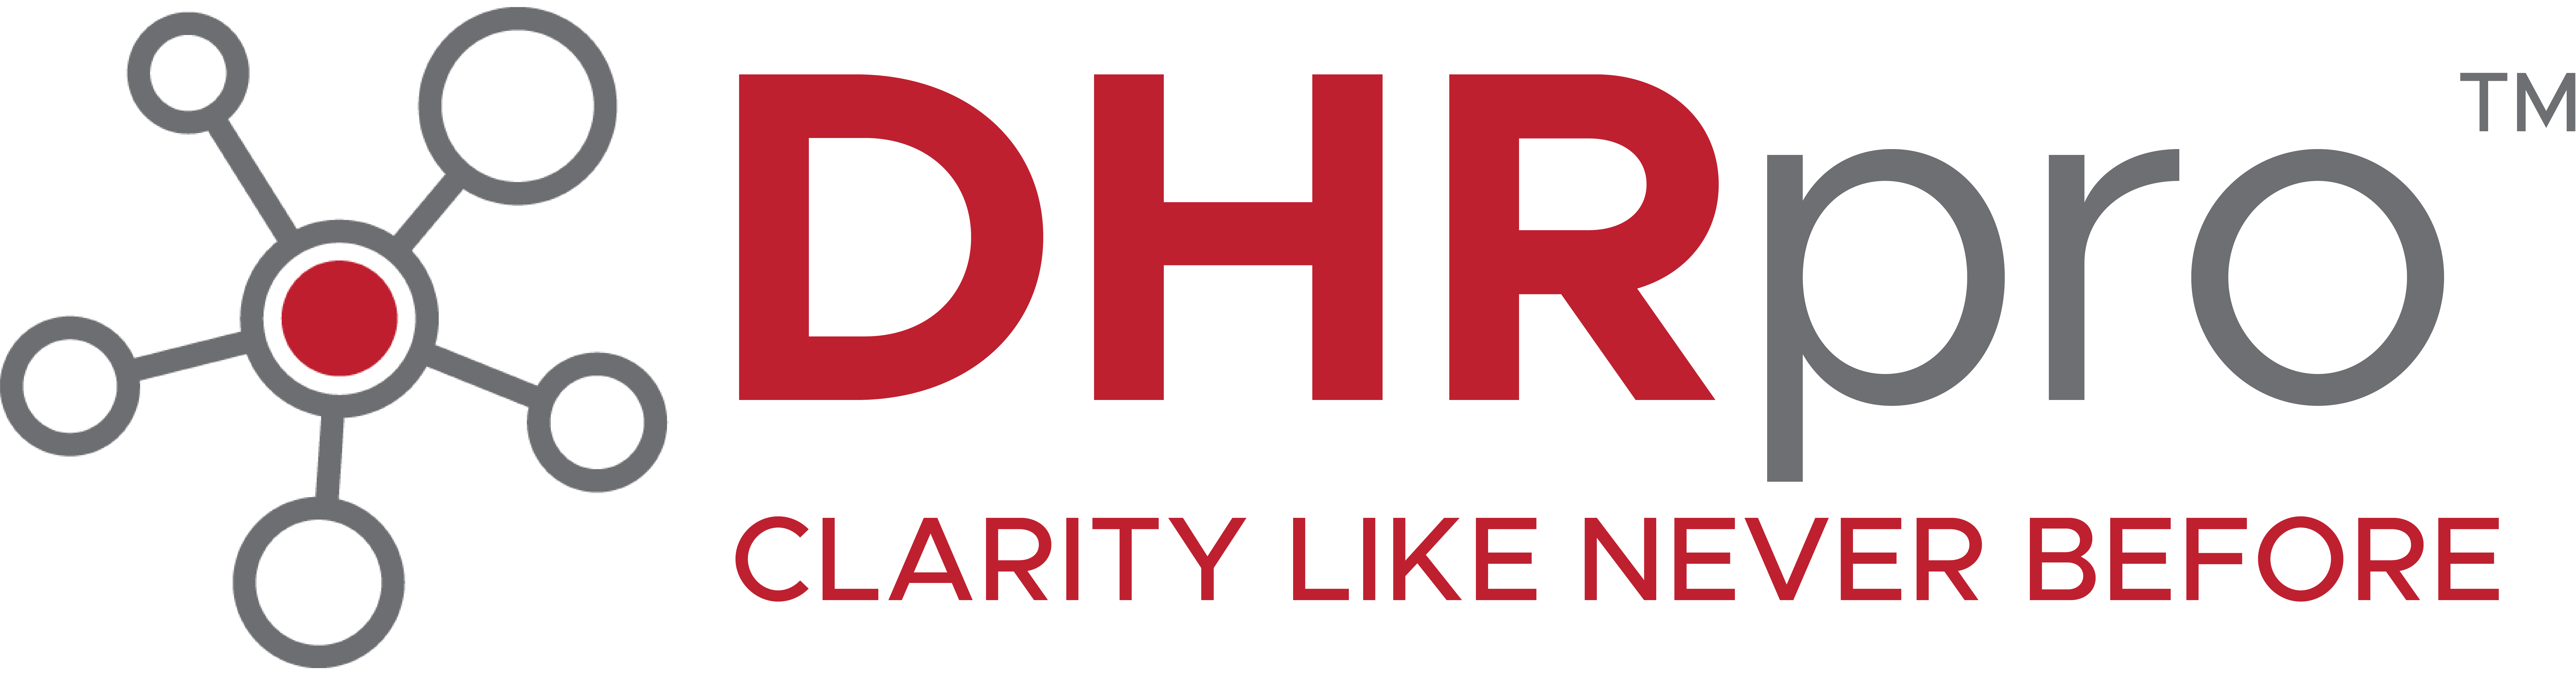 DHRPro-Logo